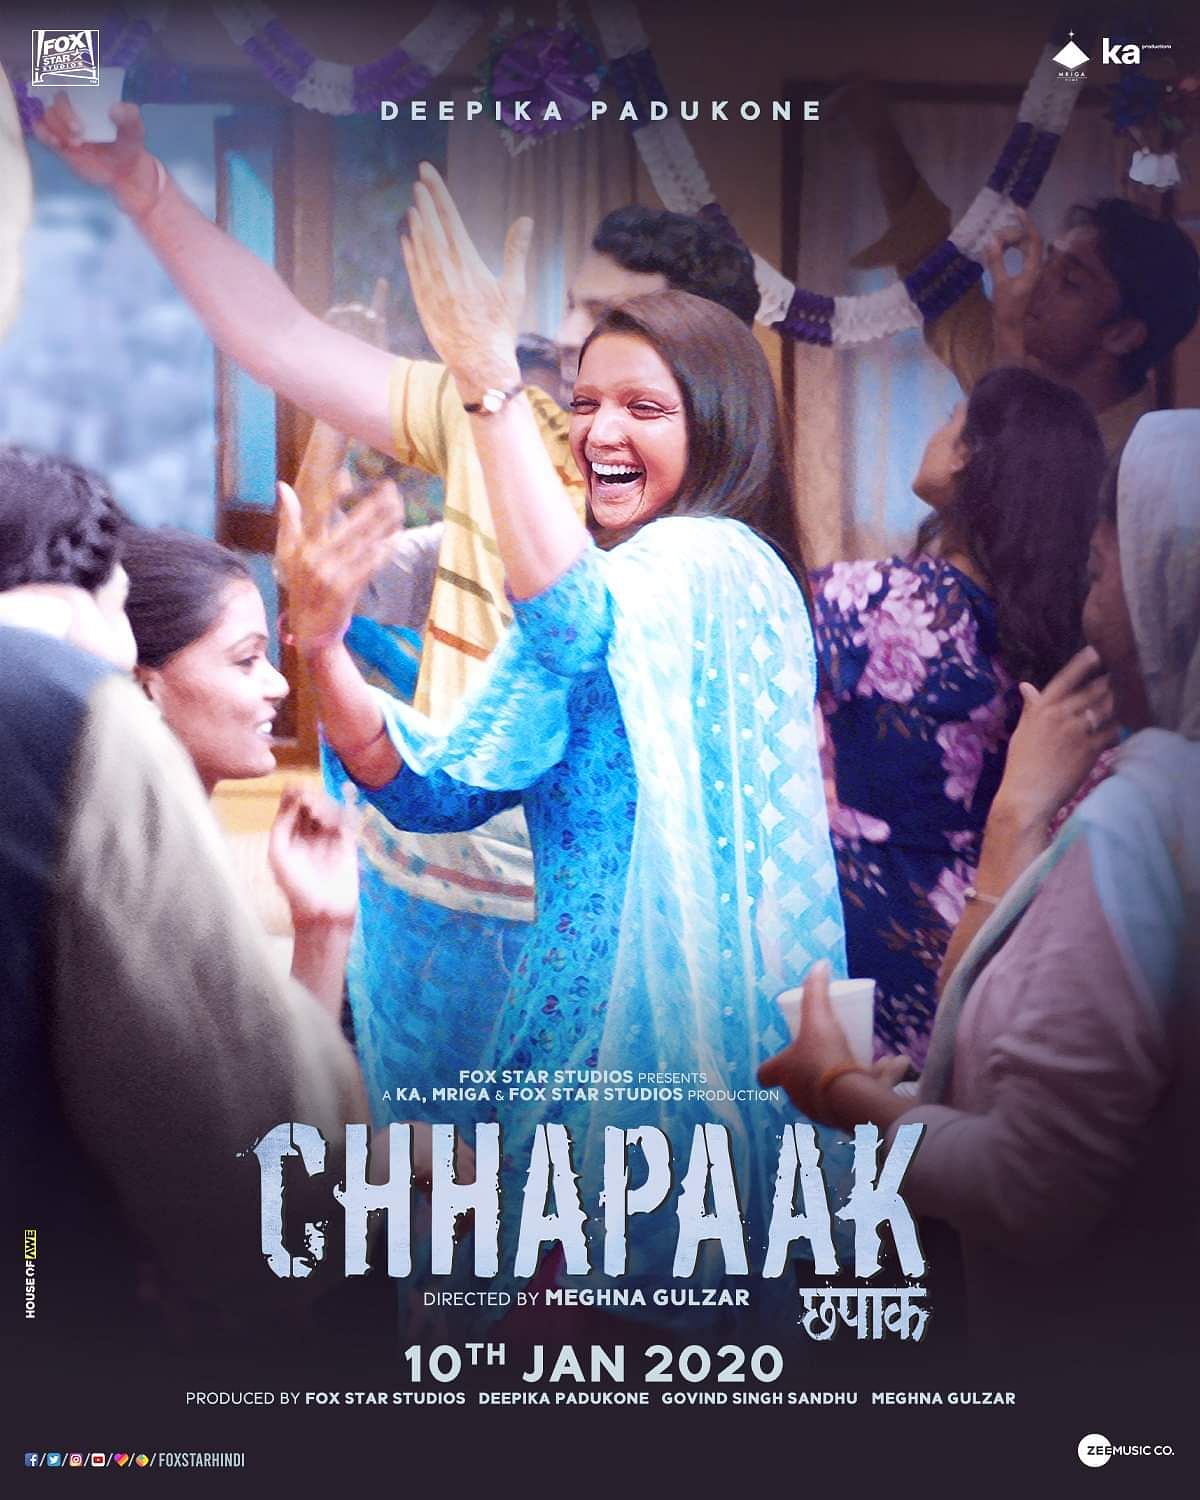 Deepika's 'Chhapaak' makes decent start at box office